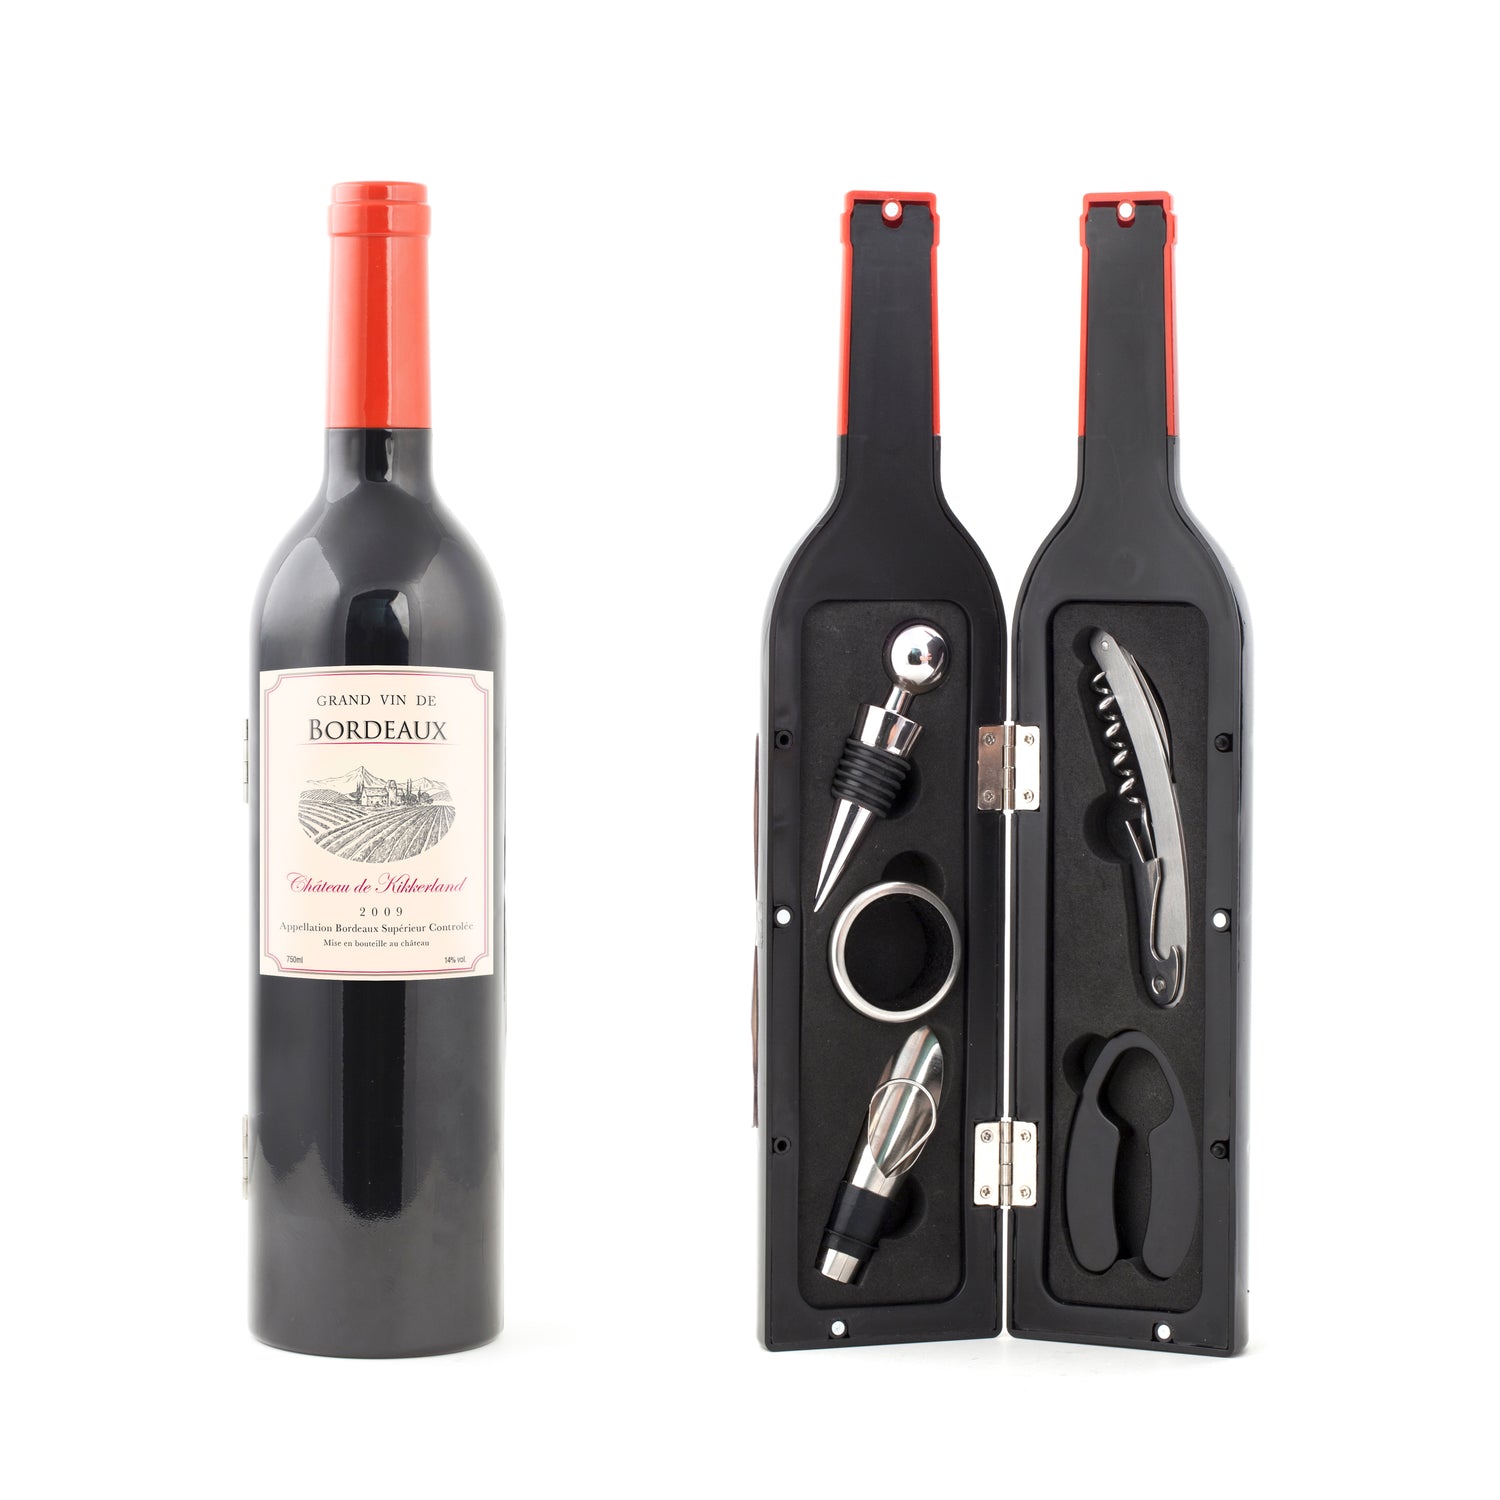 Kit d'accessoires pour bouteille de vin petit – Kikkerland Design Inc